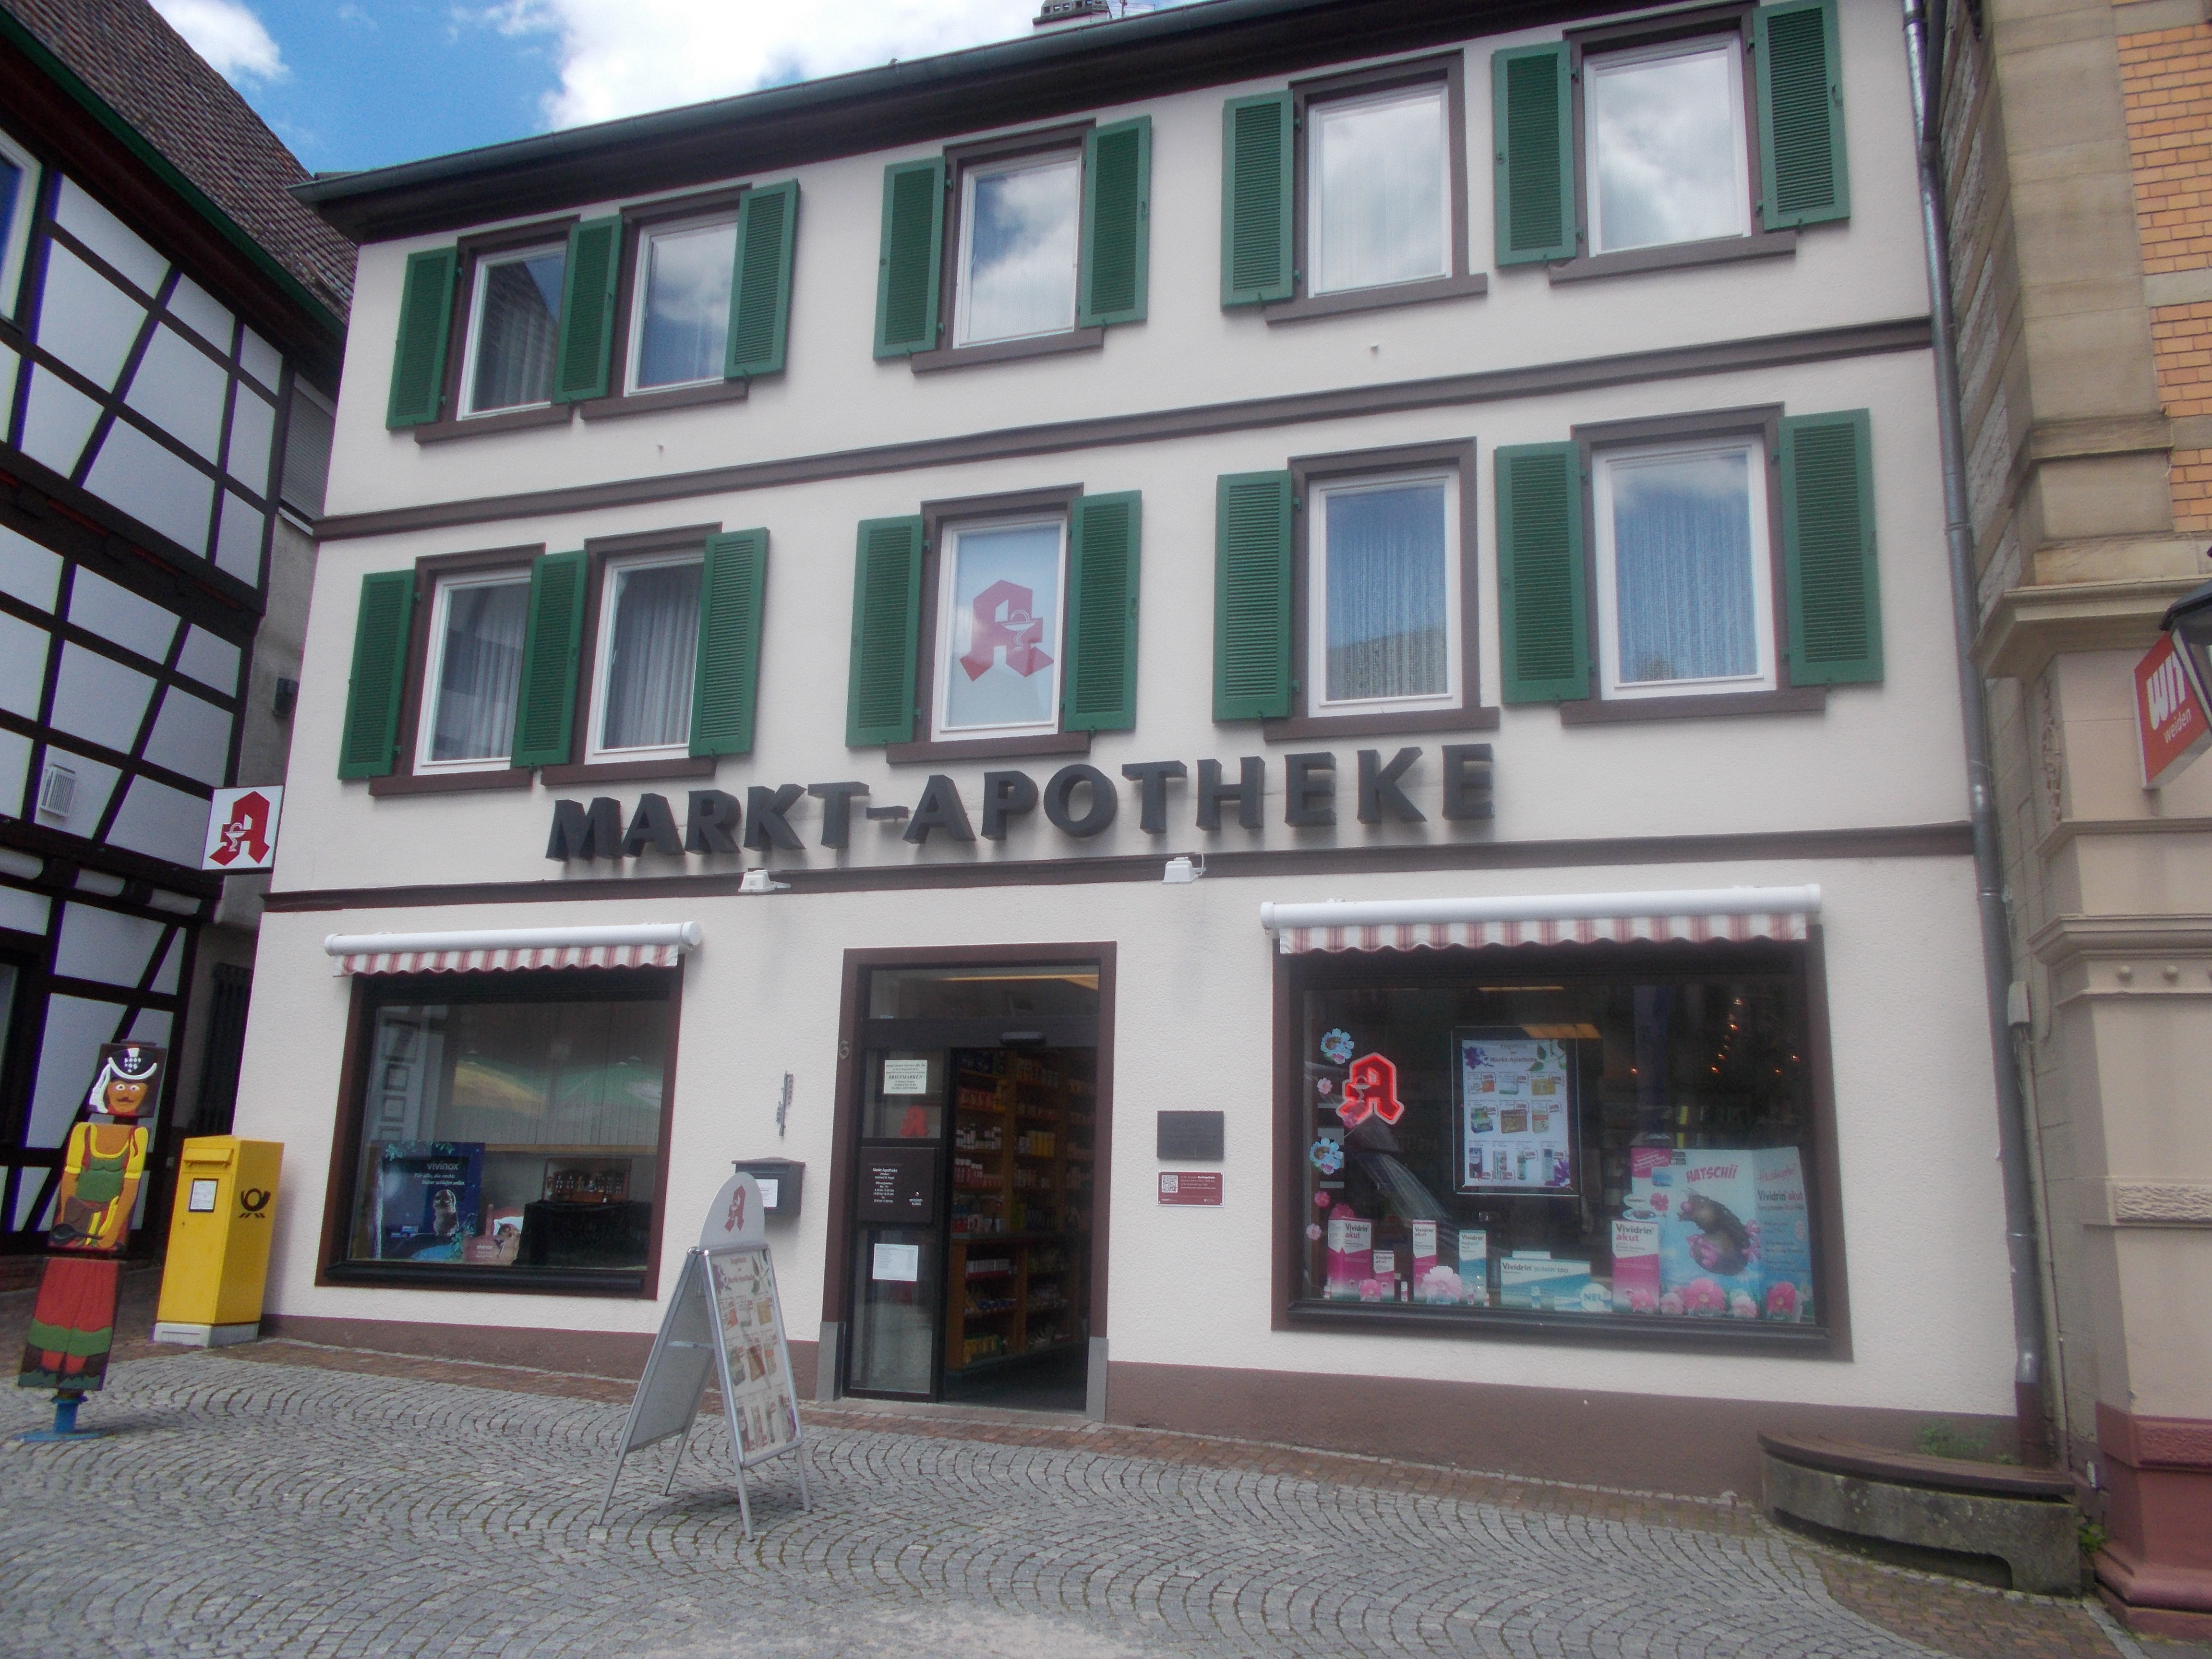 Bild 1 Markt Apotheke Inh. Gebhard Nagel in Bretten